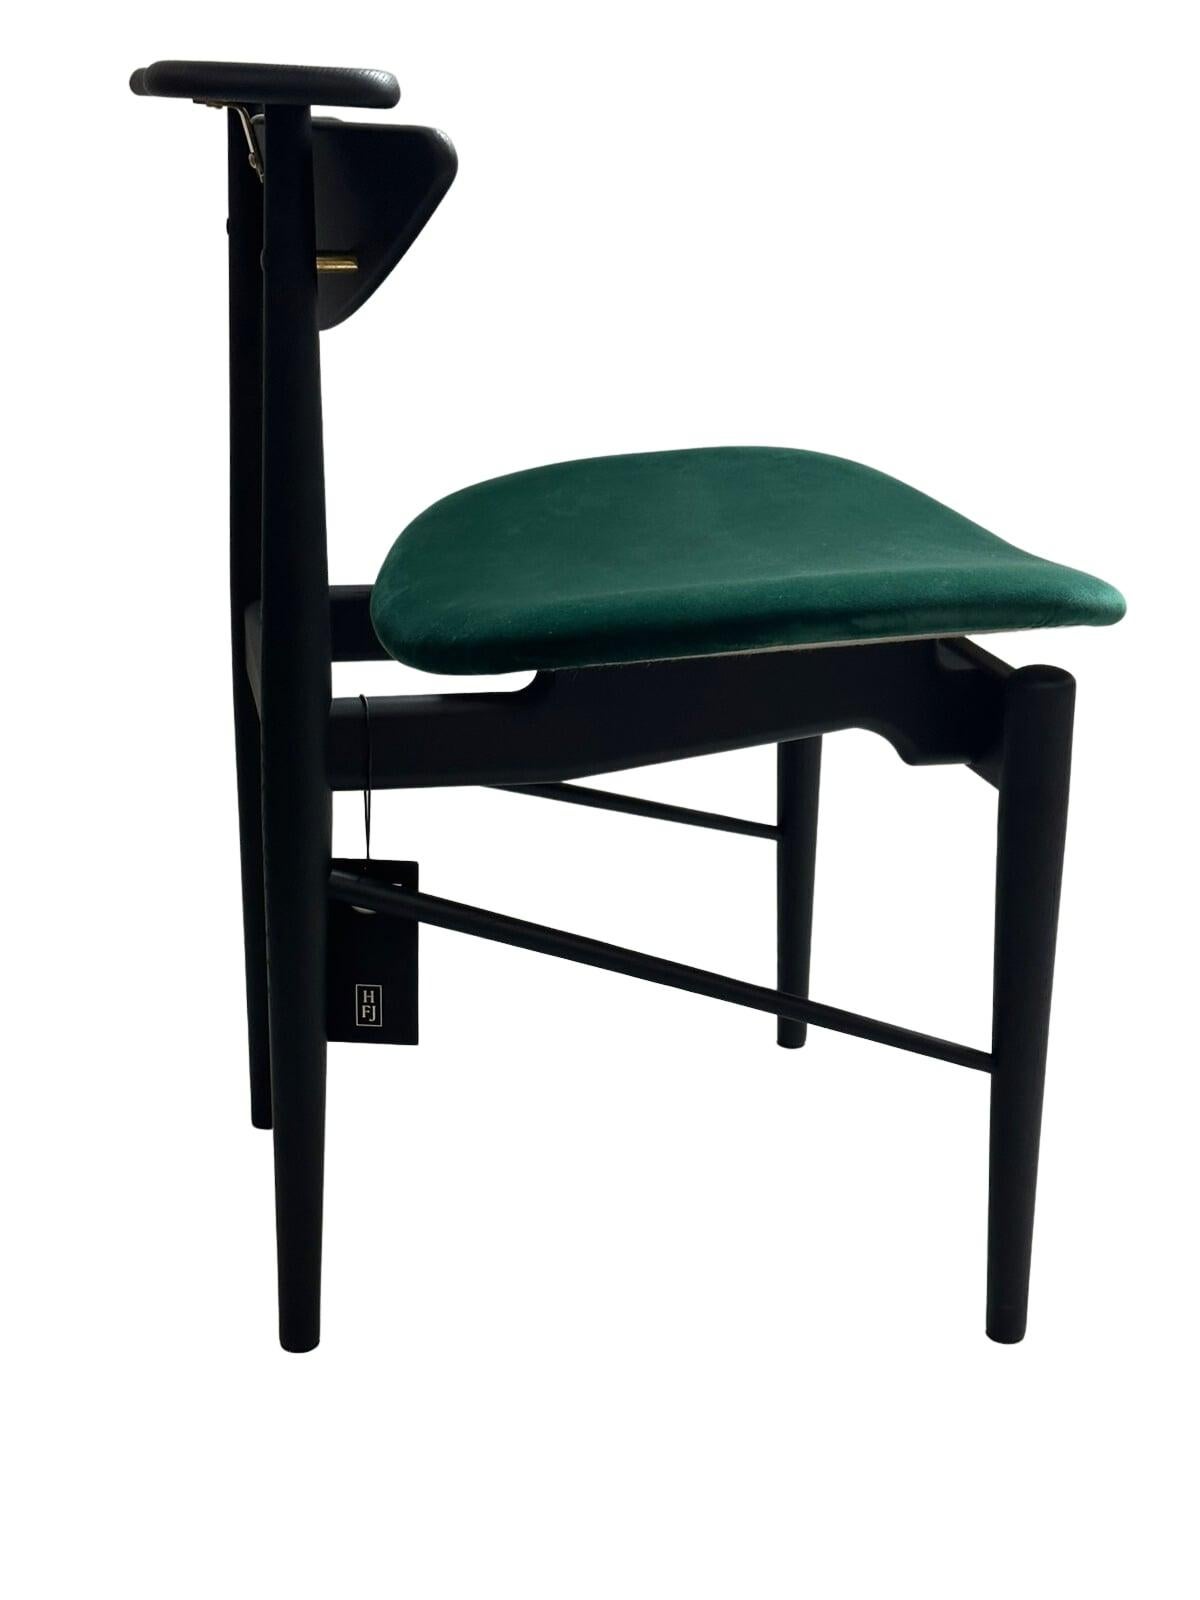 1953 von Finn Juhl entworfener Sessel, der 2015 neu aufgelegt wurde.
Hergestellt von House of Finn Juhl in Dänemark.

Finn Juhl entwarf 1953 für den Möbelhersteller Bovirke diesen schlichten, aber eleganten Esszimmerstuhl, den wir unter dem Namen